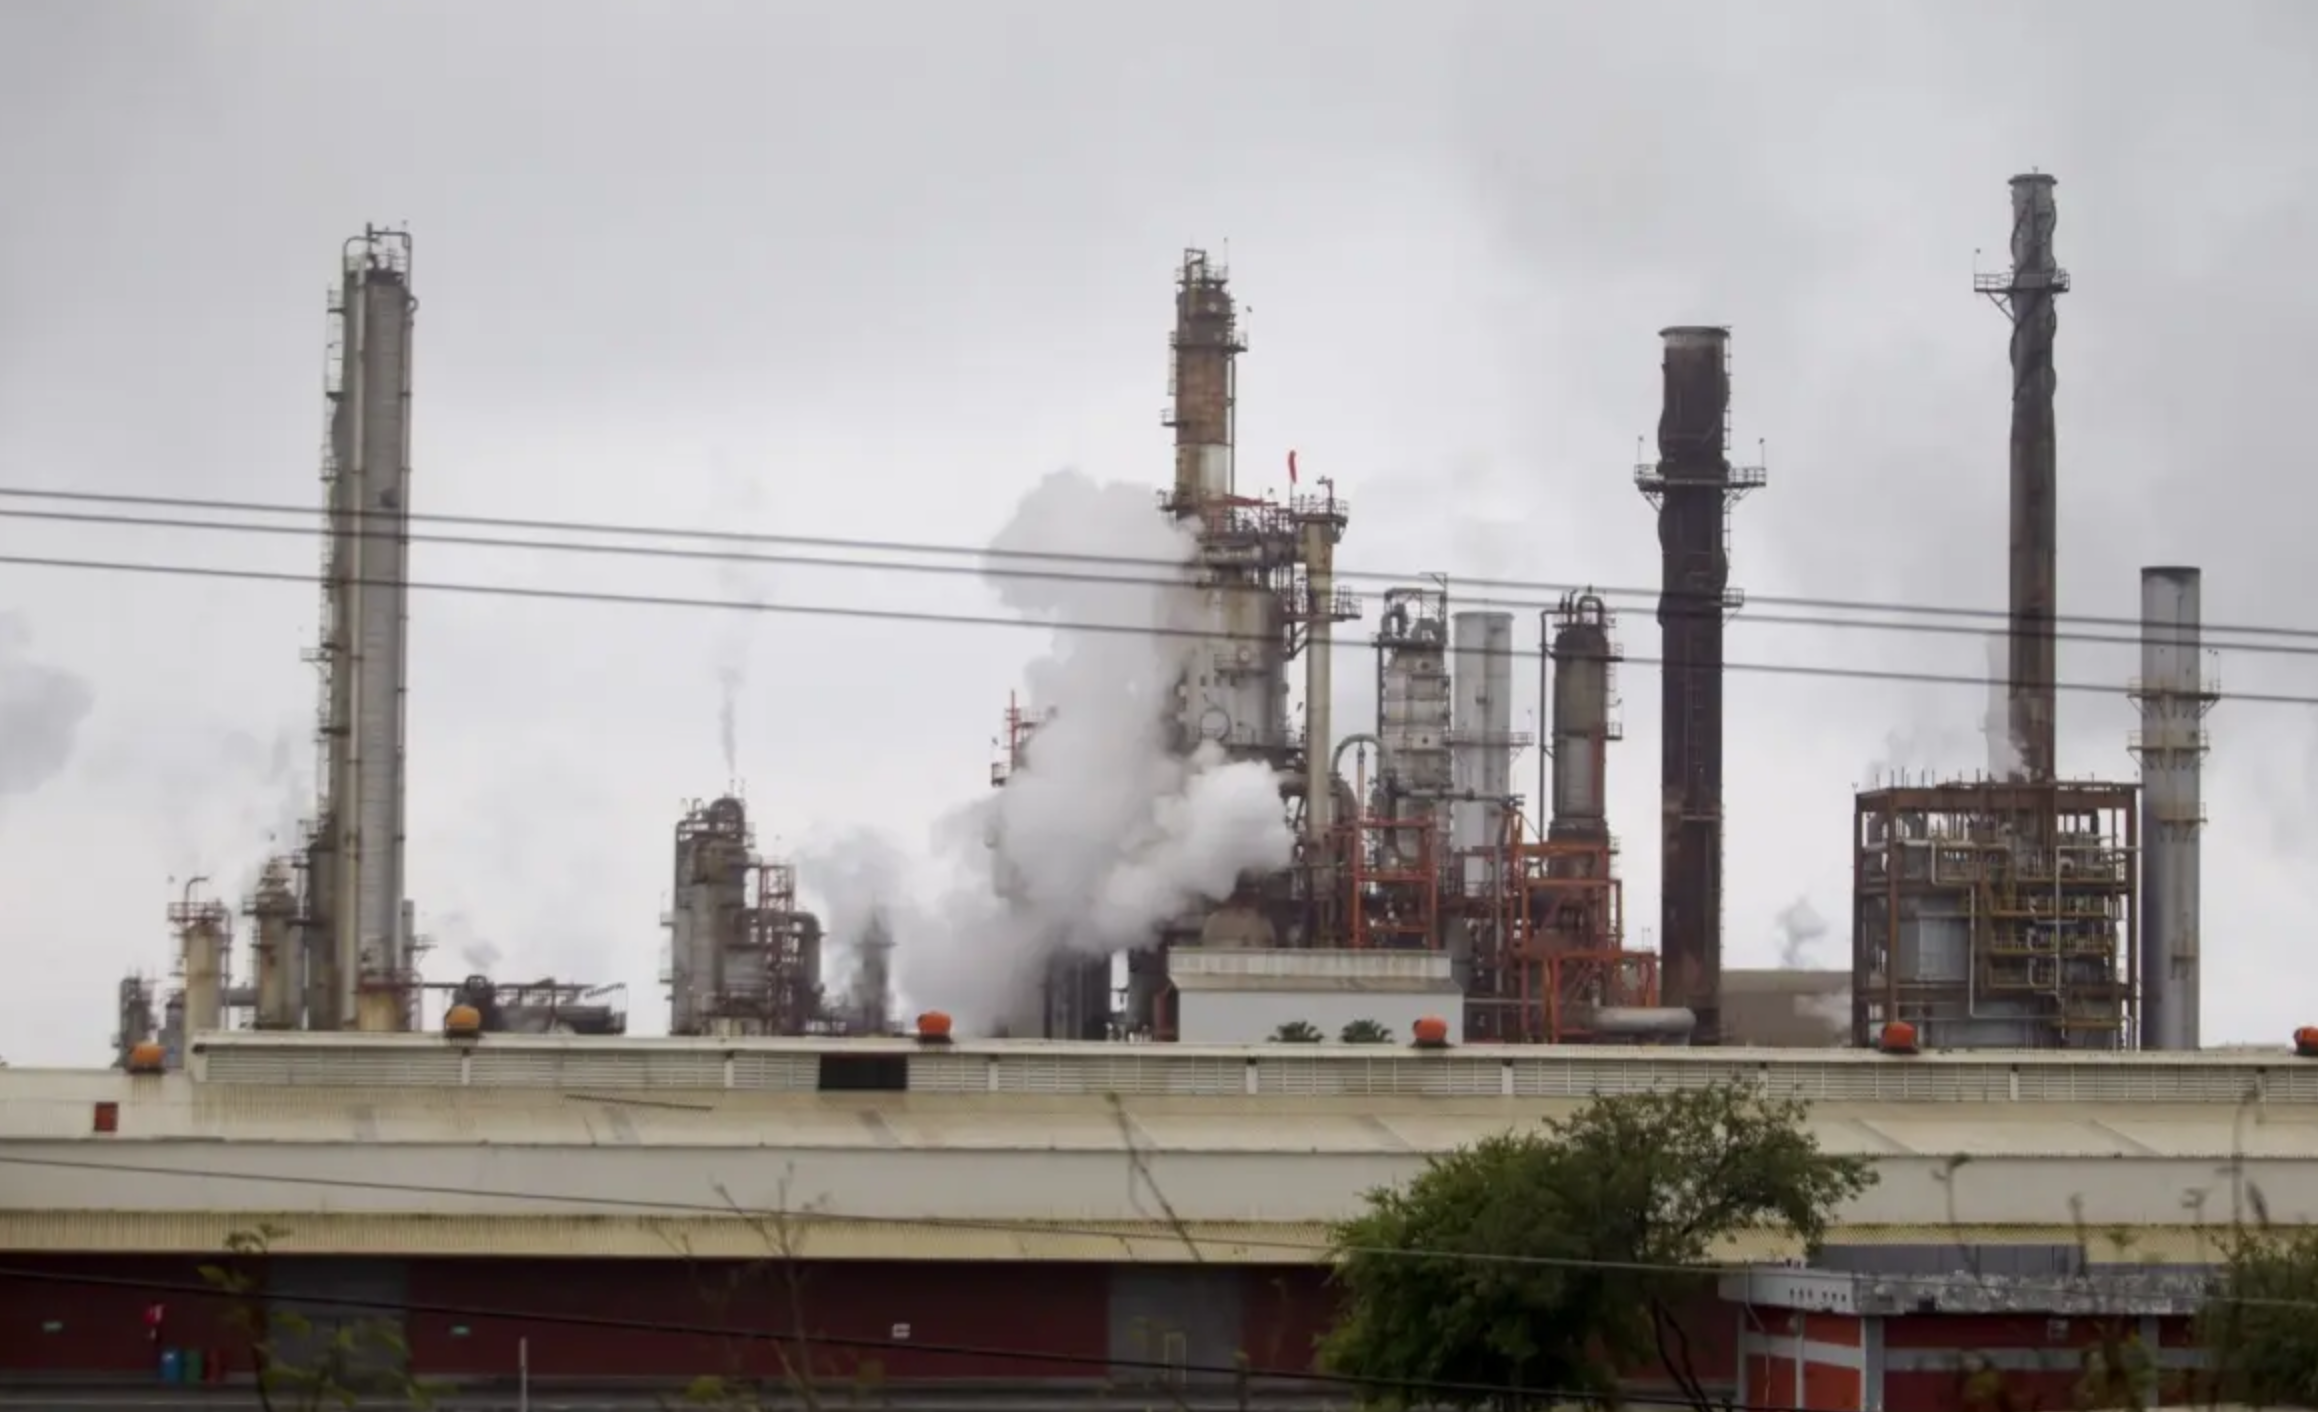 Afirma López Obrador falso que refinería de Cadereyta contamine Nuevo León